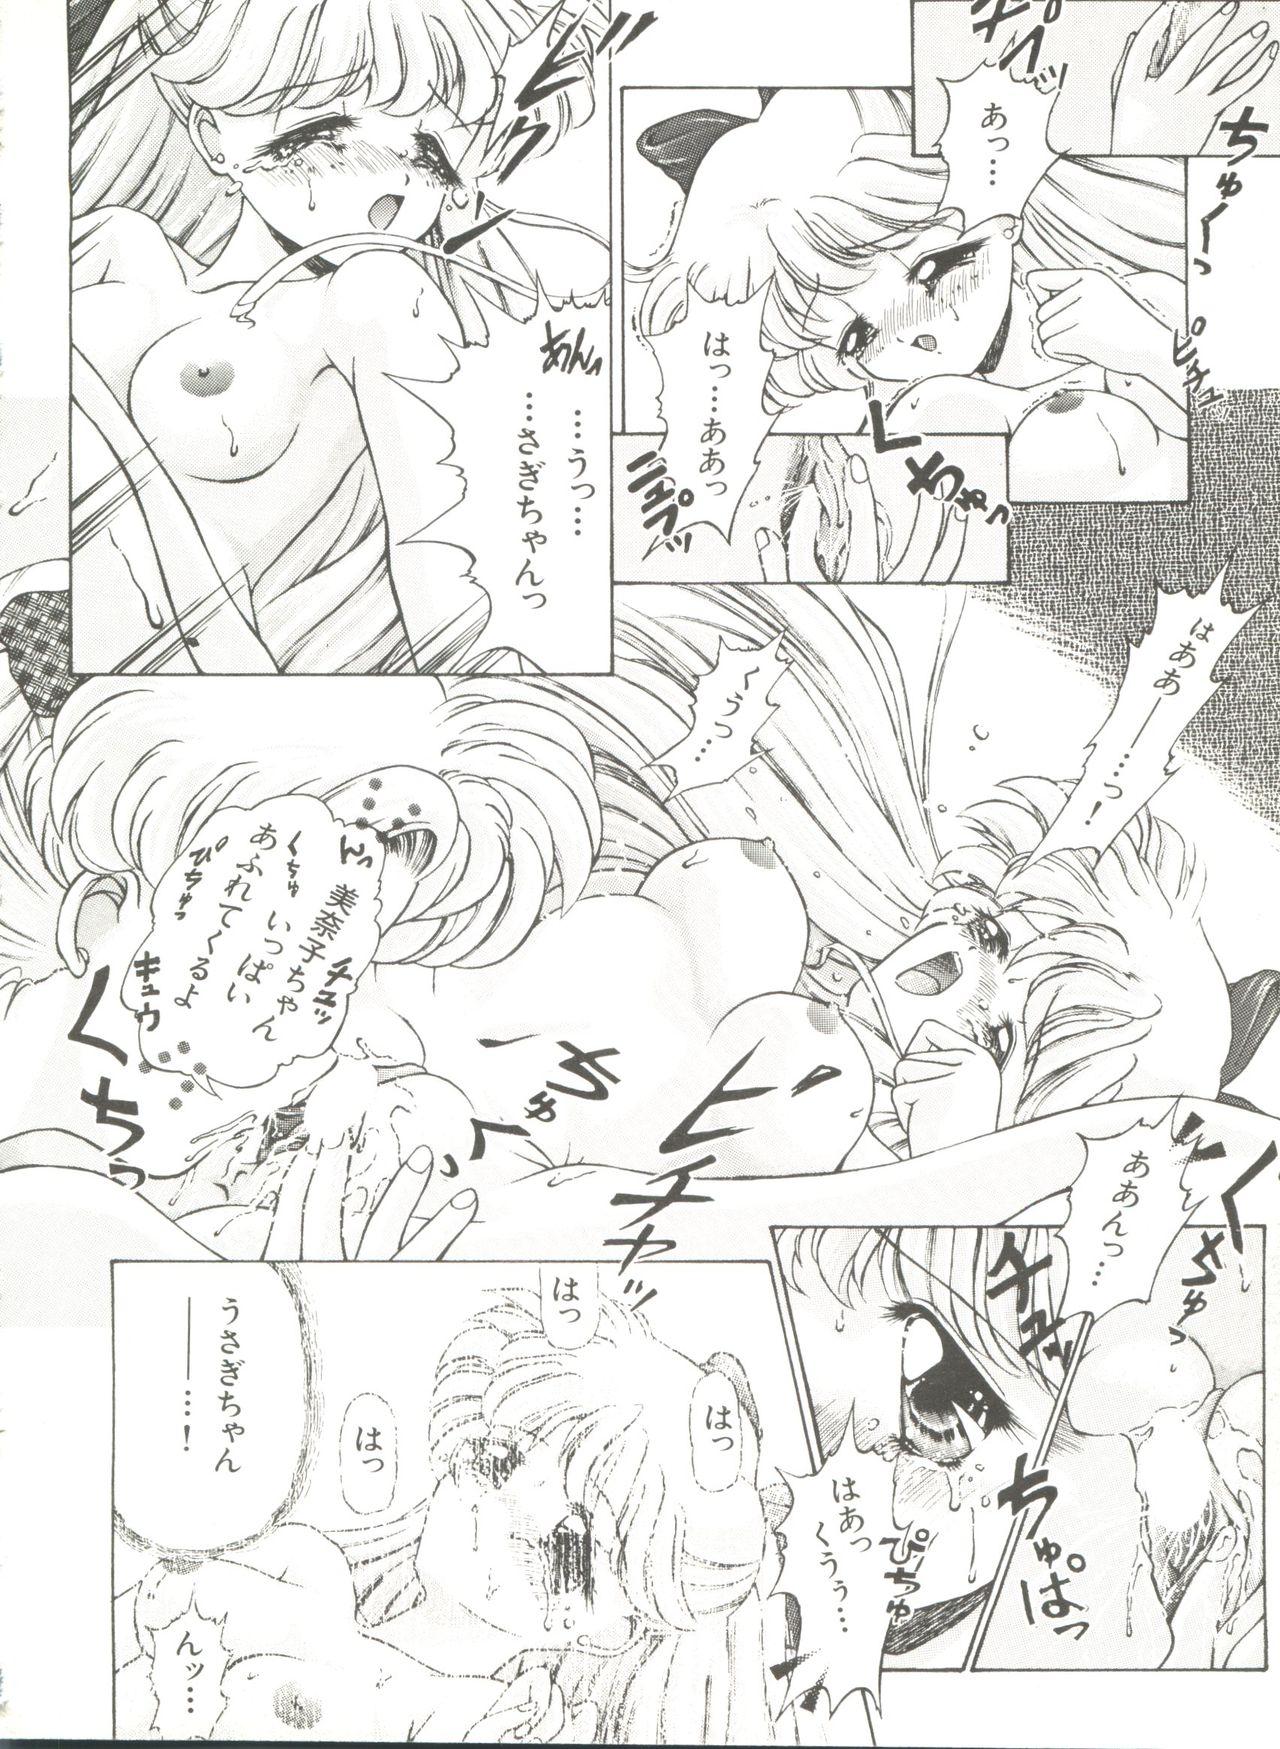 Bishoujo Doujinshi Anthology 8 - Moon Paradise 5 Tsuki no Rakuen 90